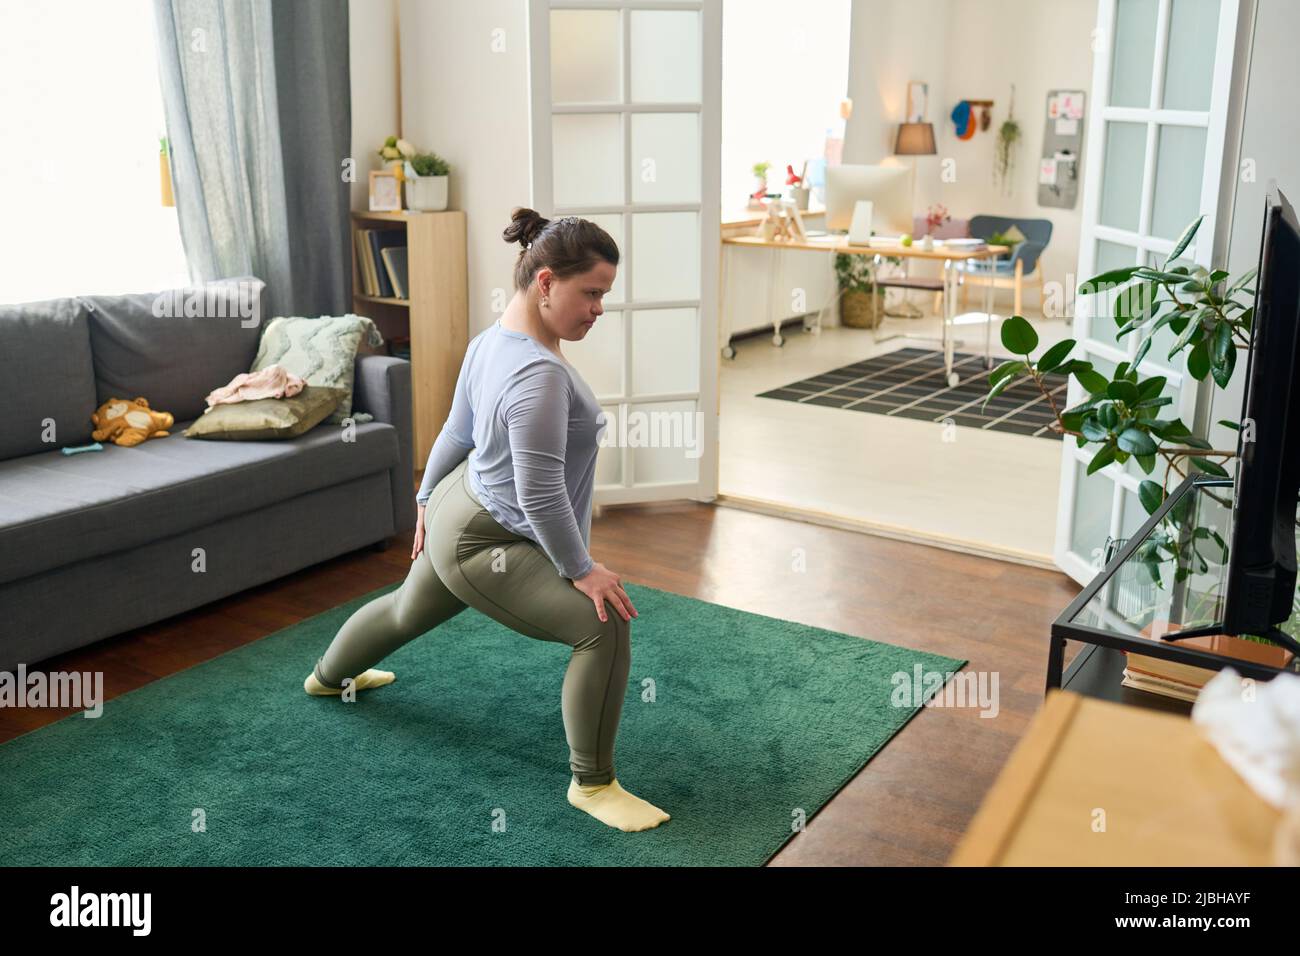 Aktives Mädchen mit geistiger Behinderung macht Dehnungsübungen auf dem Boden des Wohnzimmers vor dem fernsehbildschirm, während es Yoga praktiziert Stockfoto